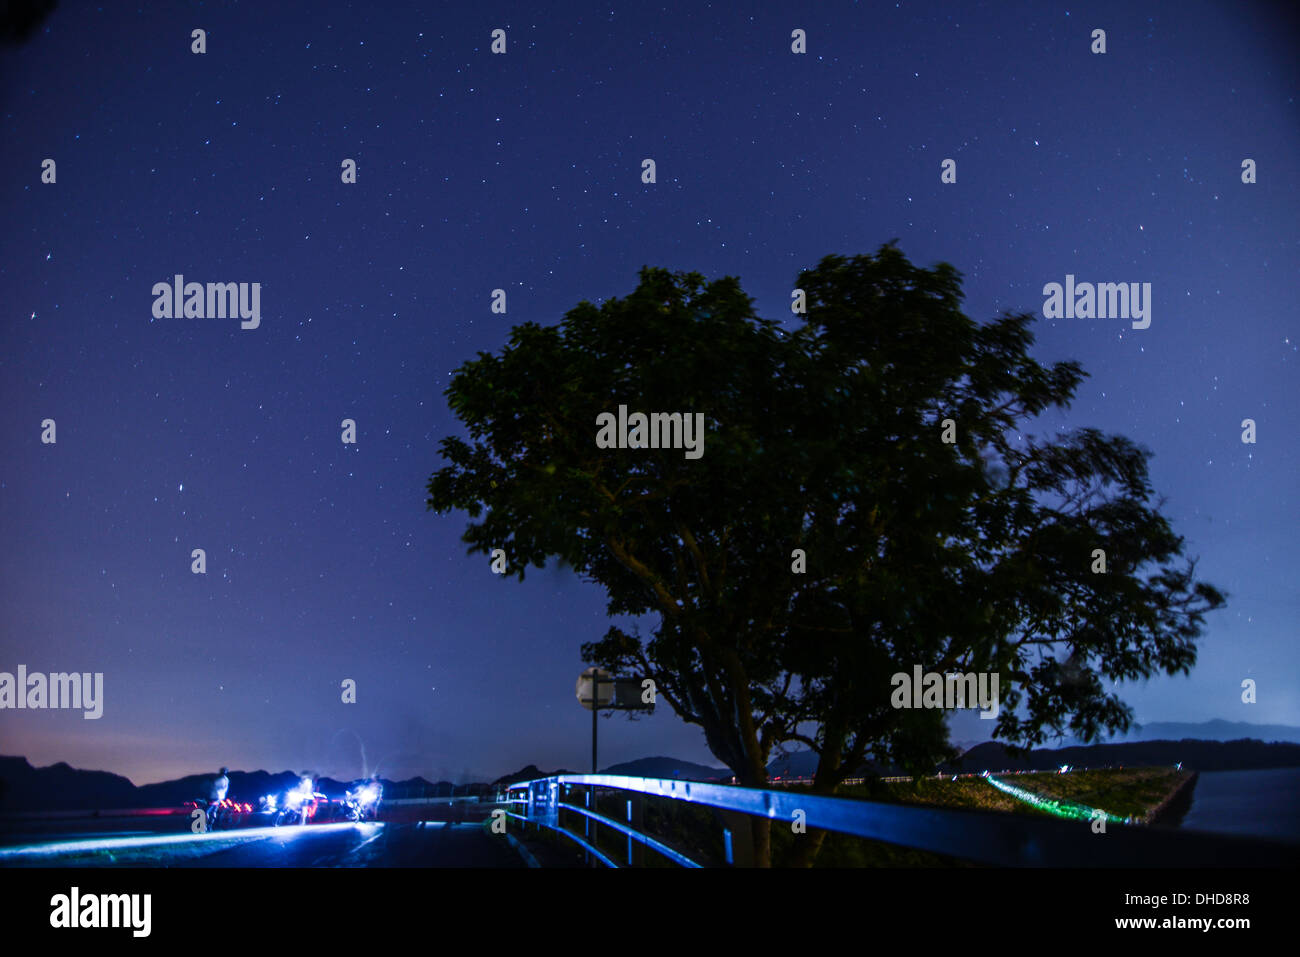 Ein einzelner Baum in einem Feld mit schönen Sternen Nacht Stockfoto